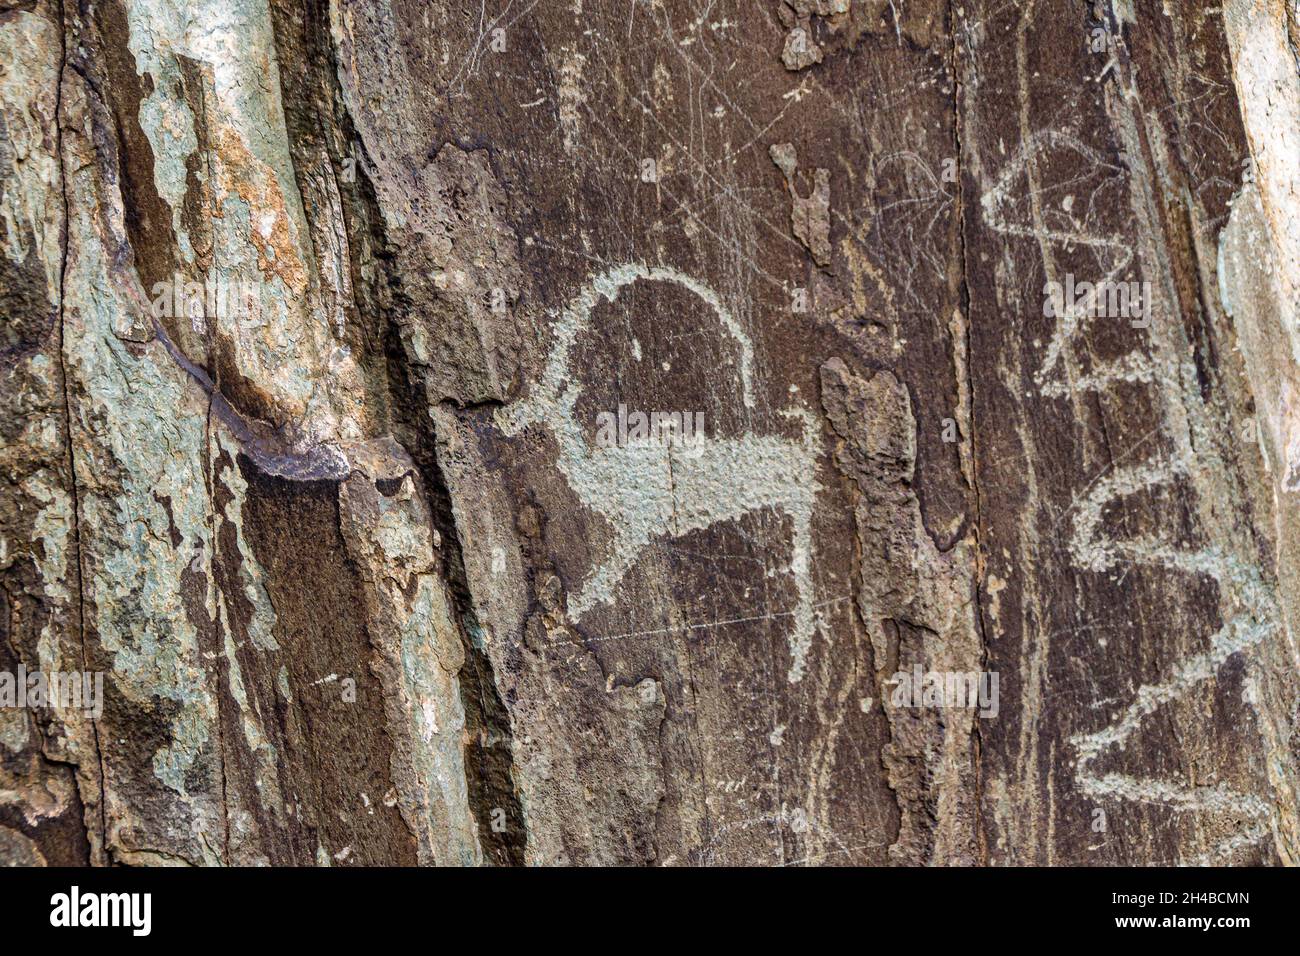 Eine Silhouettenzeichnung einer Ziege, die von einem längst verstorbenen Autor detailliert auf einen Steinfelsen geschnitzt und bis heute gut erhalten ist Stockfoto